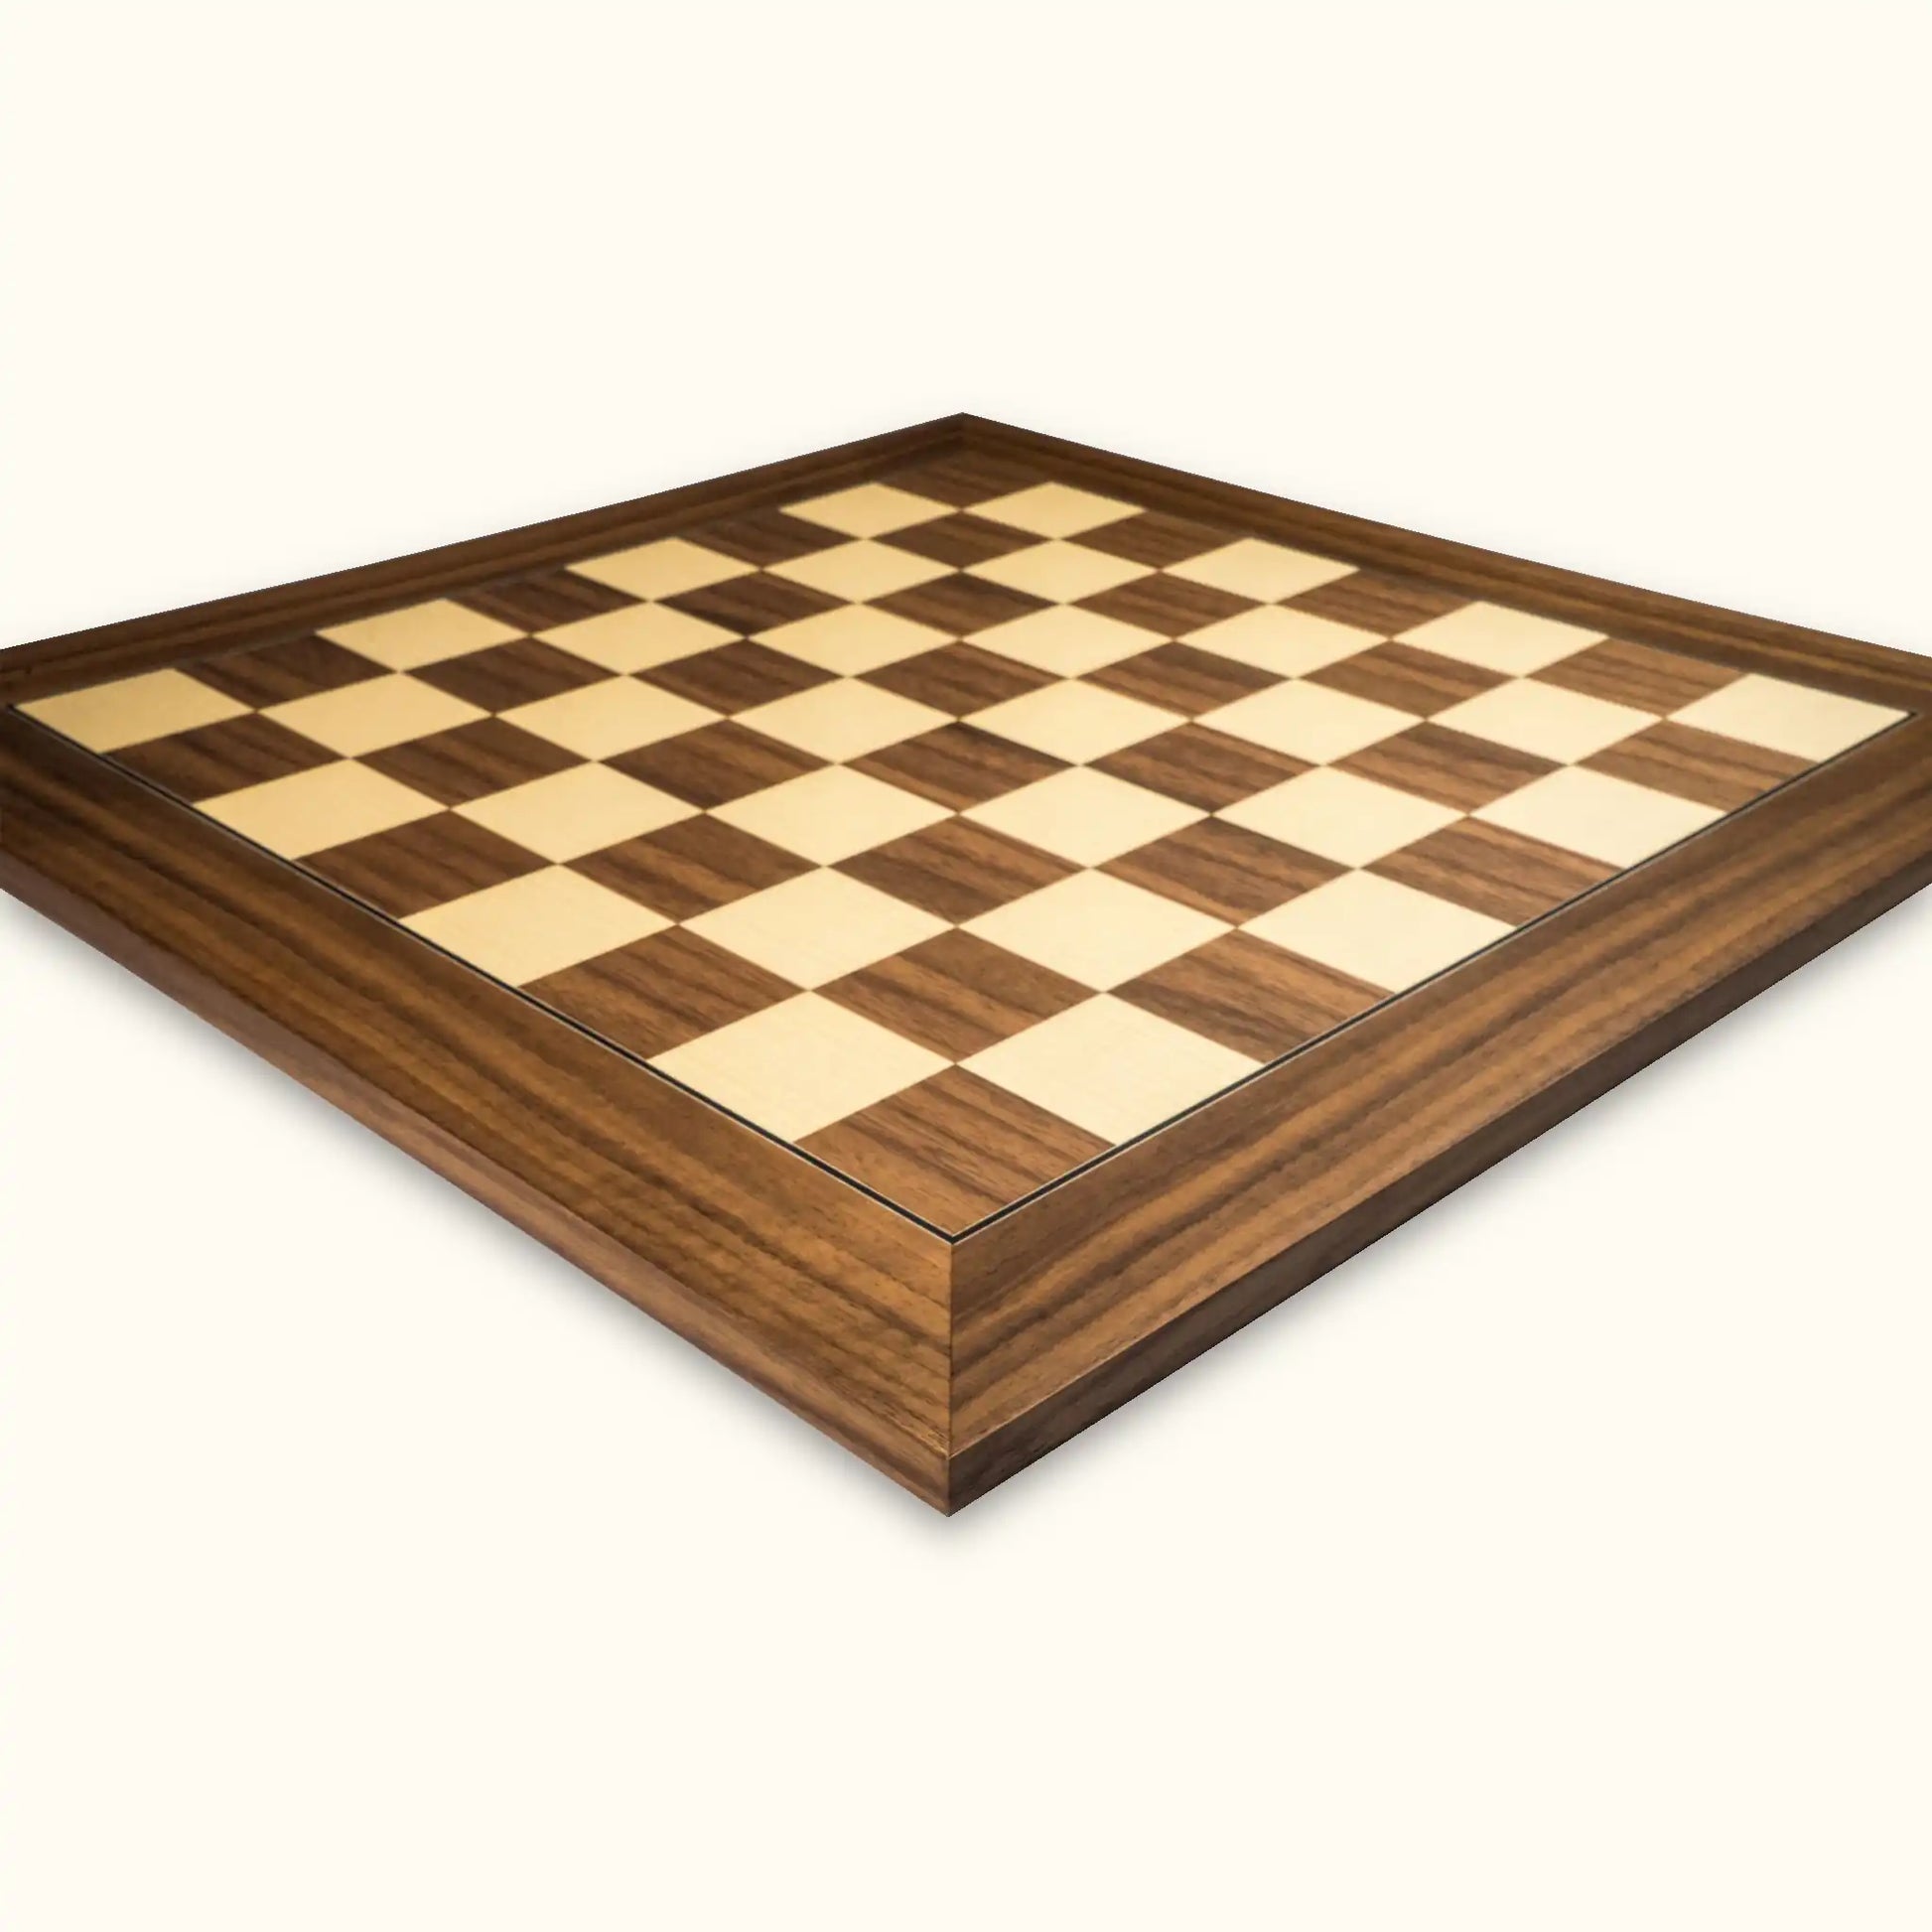 Chessboard Walnut Deluxe 55 mm walnut maple side view